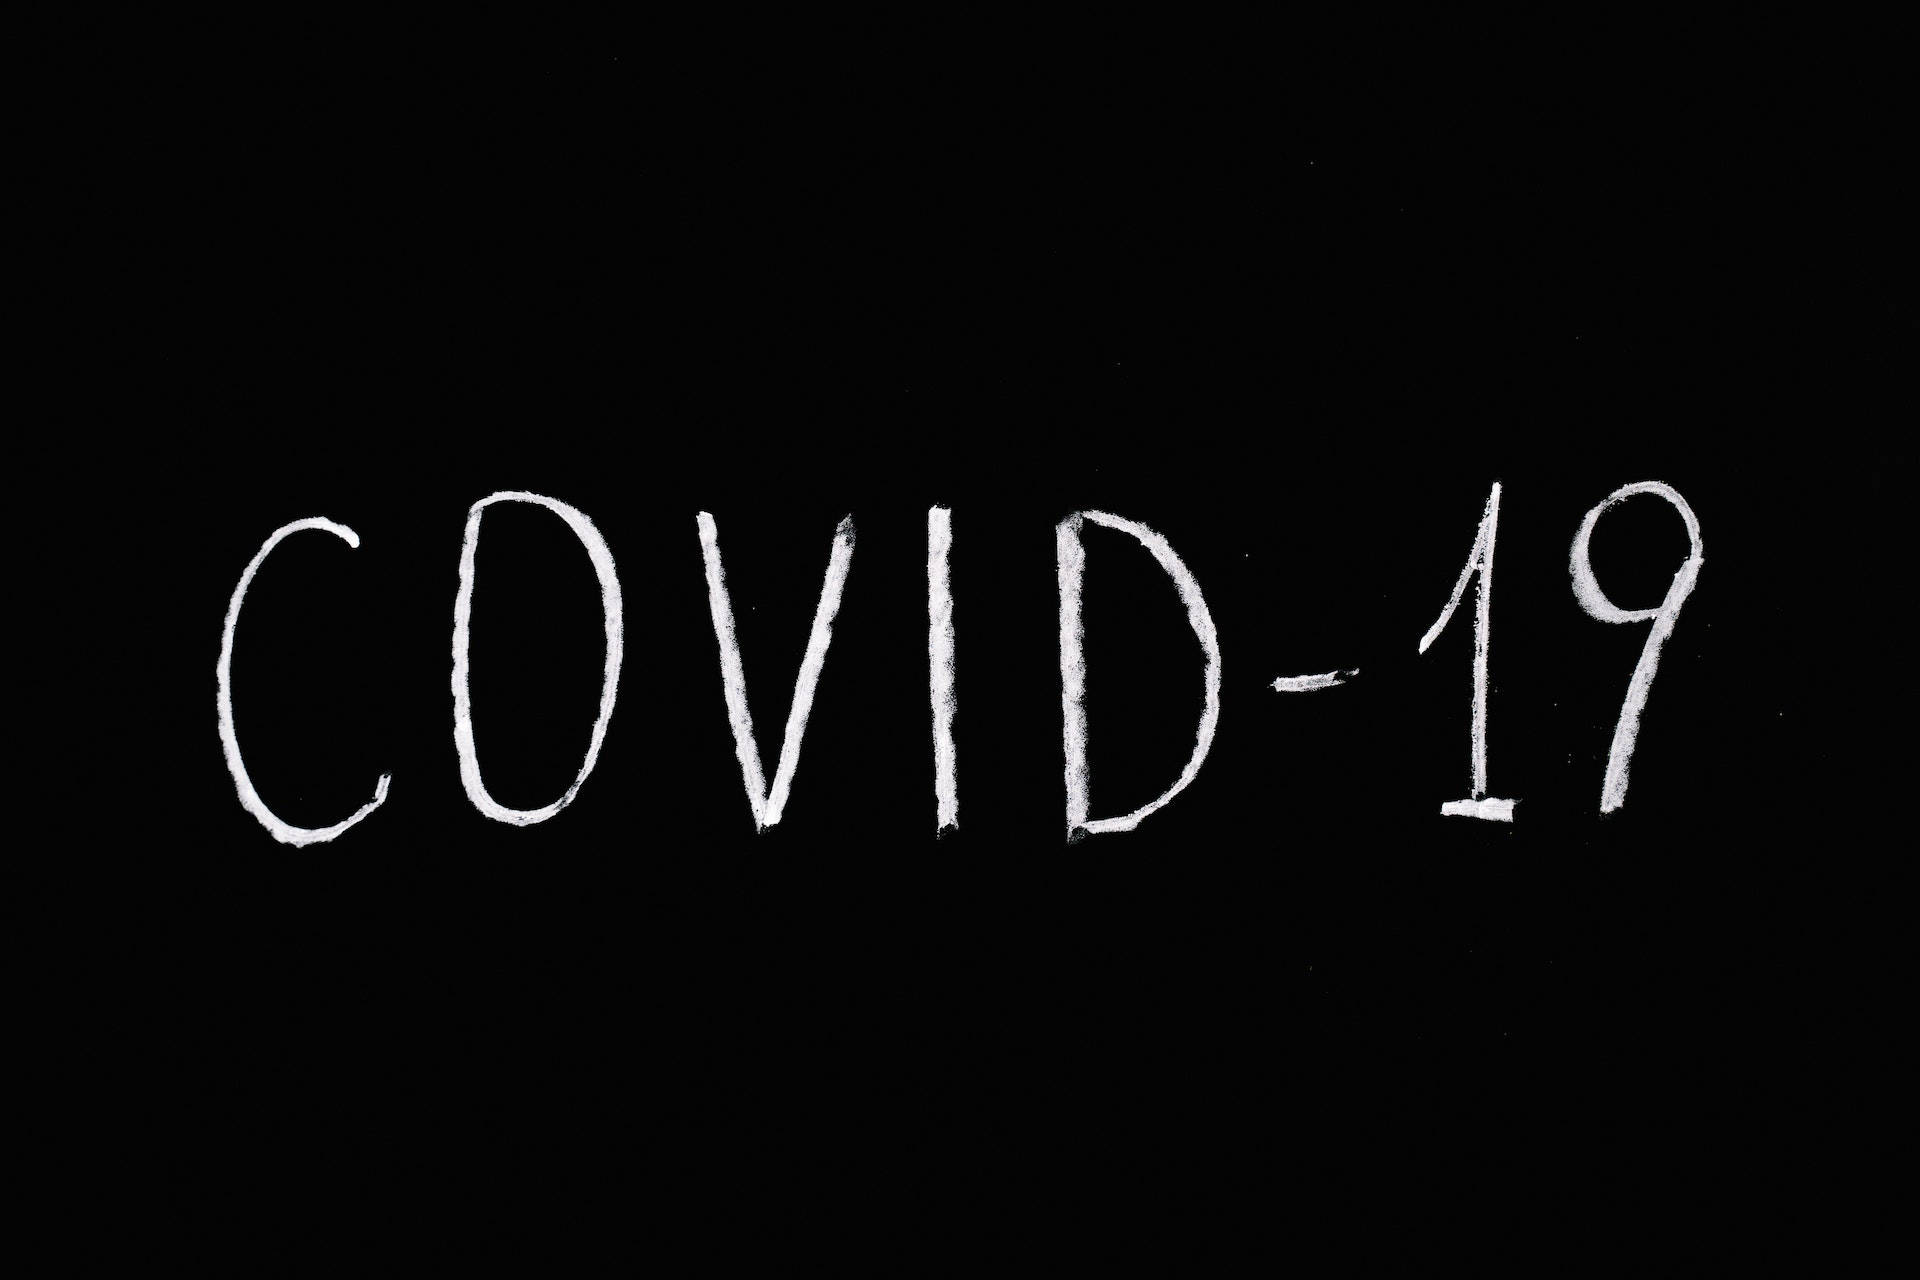 Covid-19 Lettering Black Pc Wallpaper